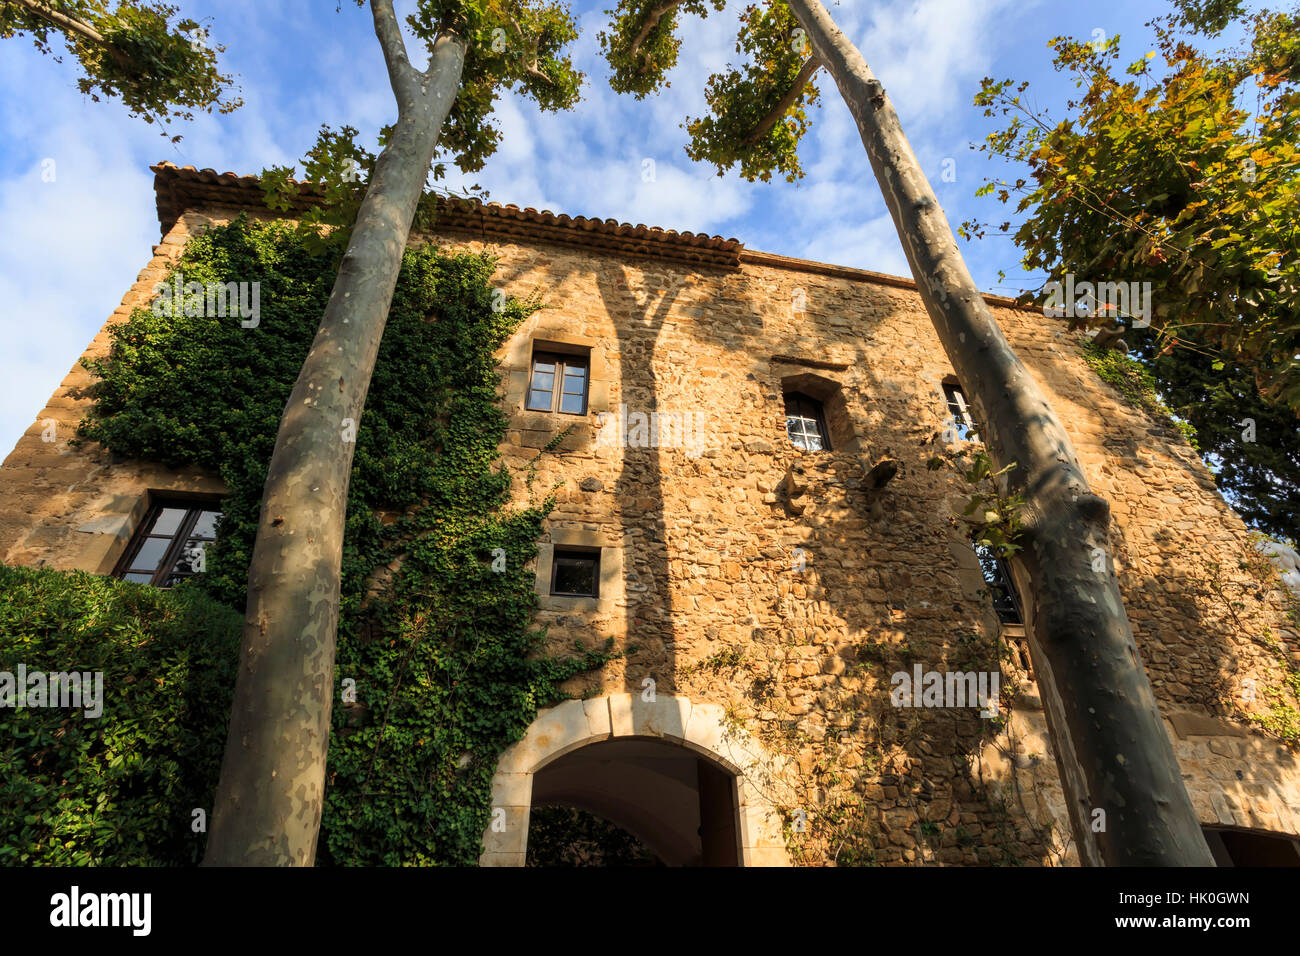 Gala Dali Museo Castello di facciata in mezzo di alberi di alto fusto, casa medievale di Salvador Dali, Pubol, Baix Empordà, Girona, Catalogna, Spagna Foto Stock